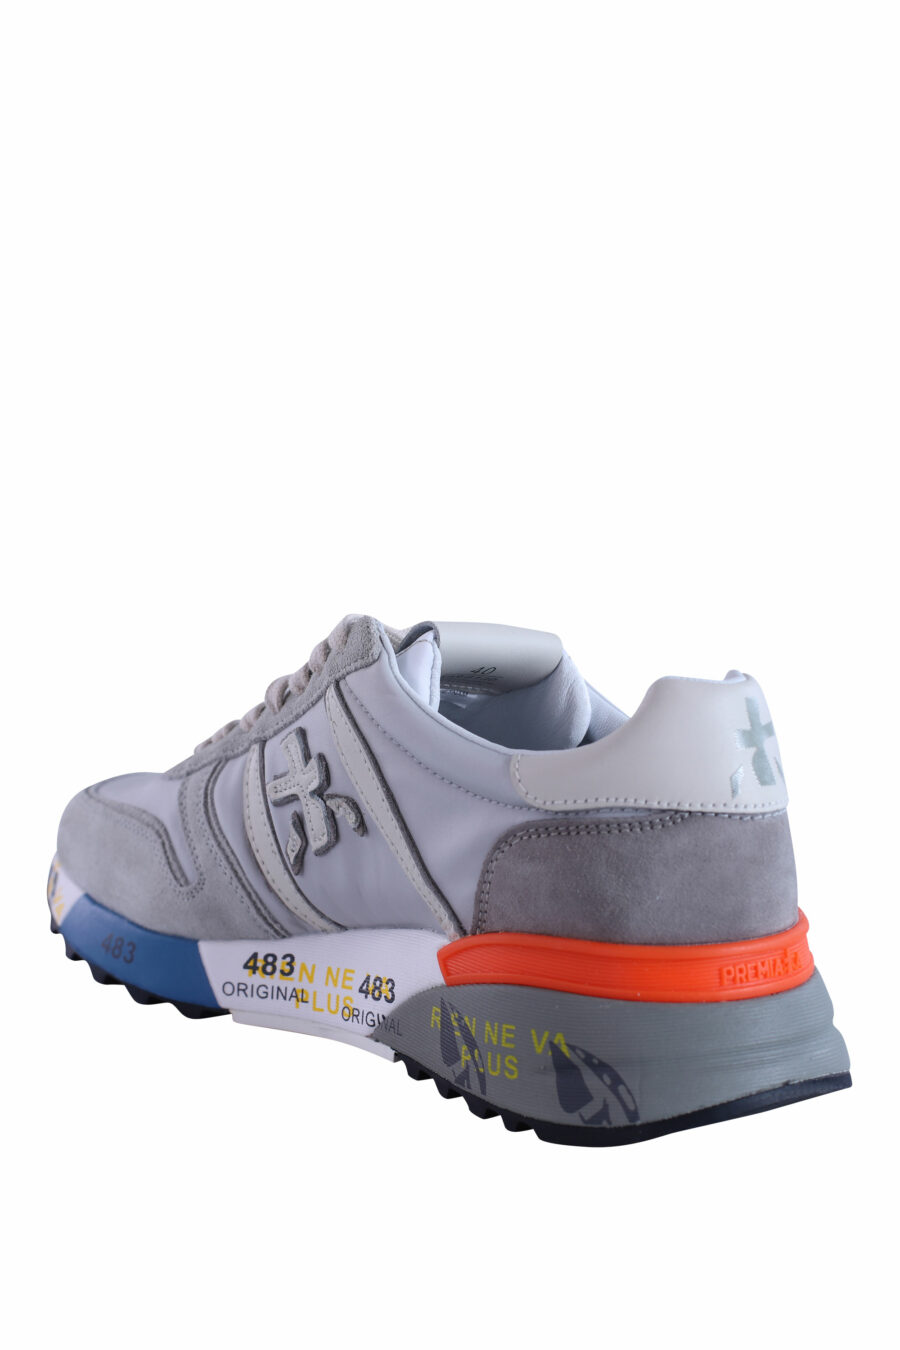 Zapatillas grises con suela multicolor "lander 6130" - IMG 2900